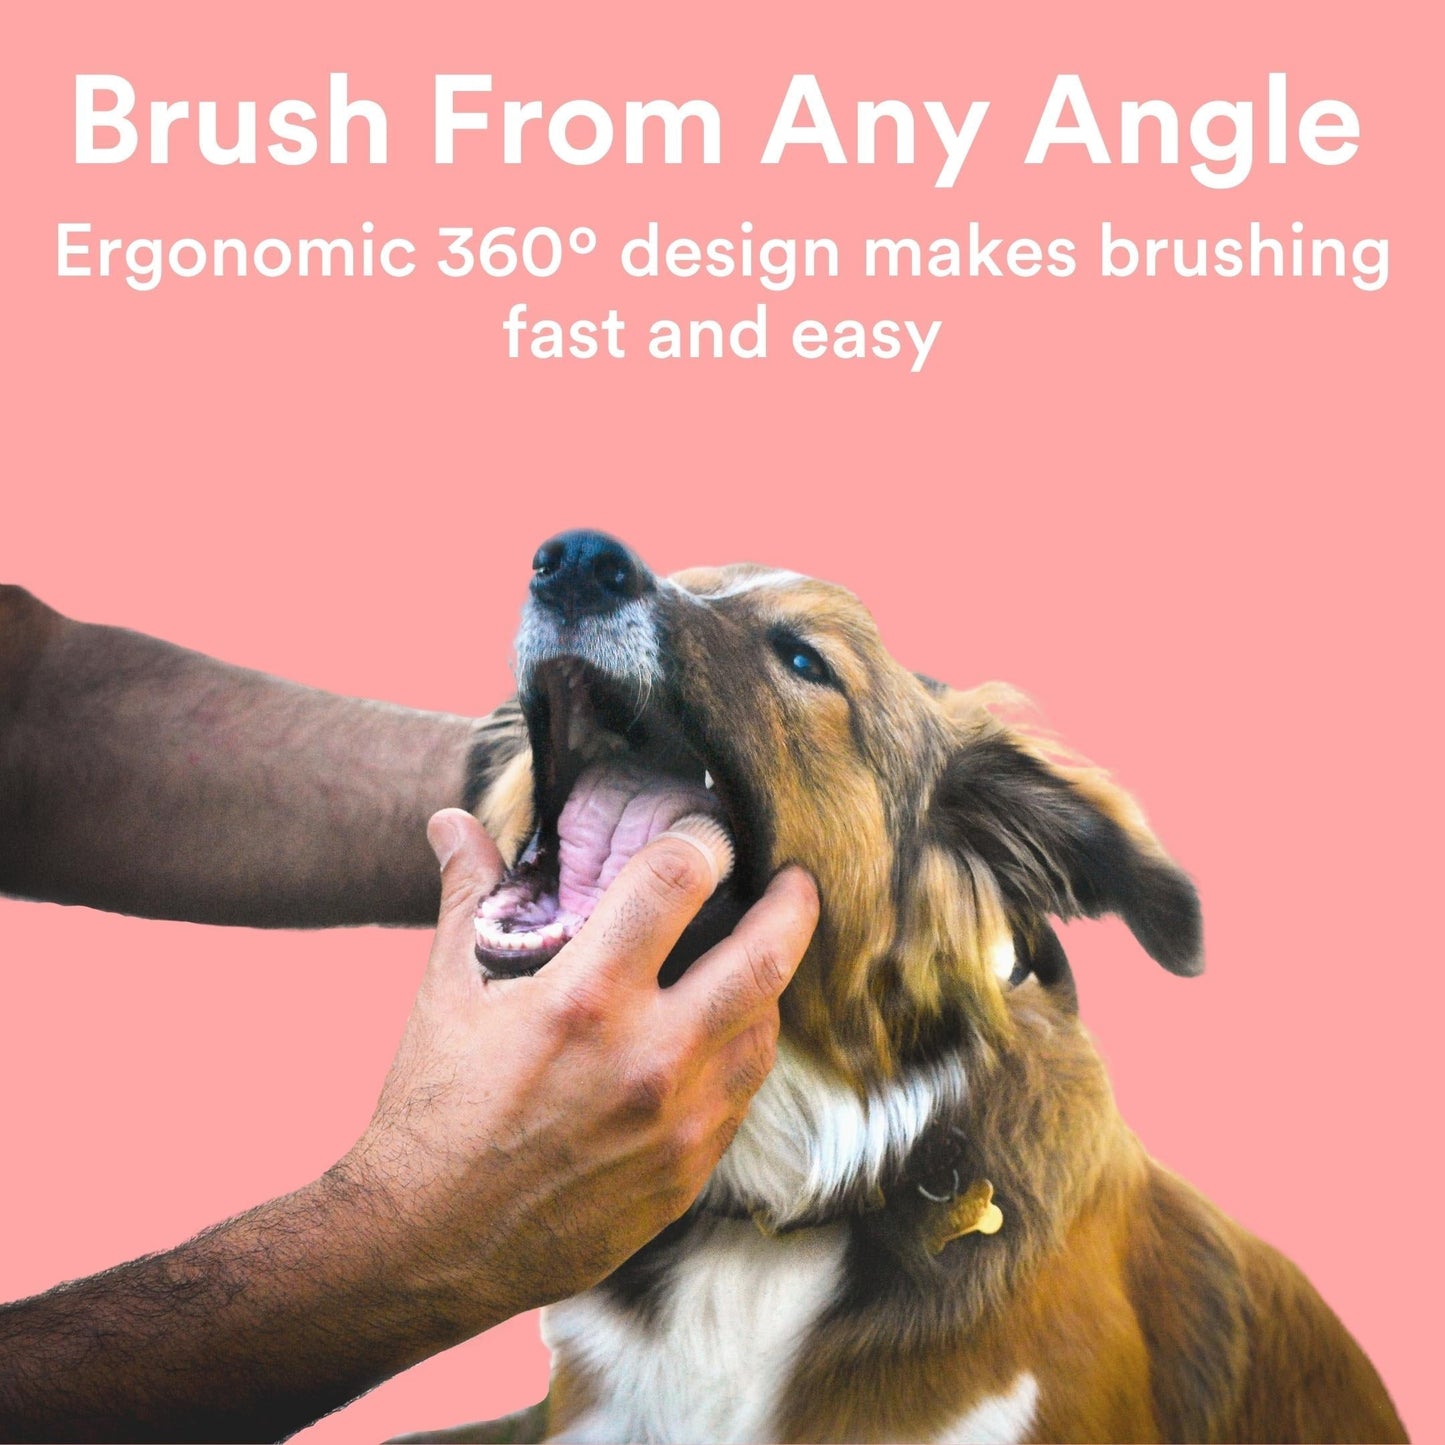 Jasper® 360º Pet Finger Toothbrush, 4-Pack Neon